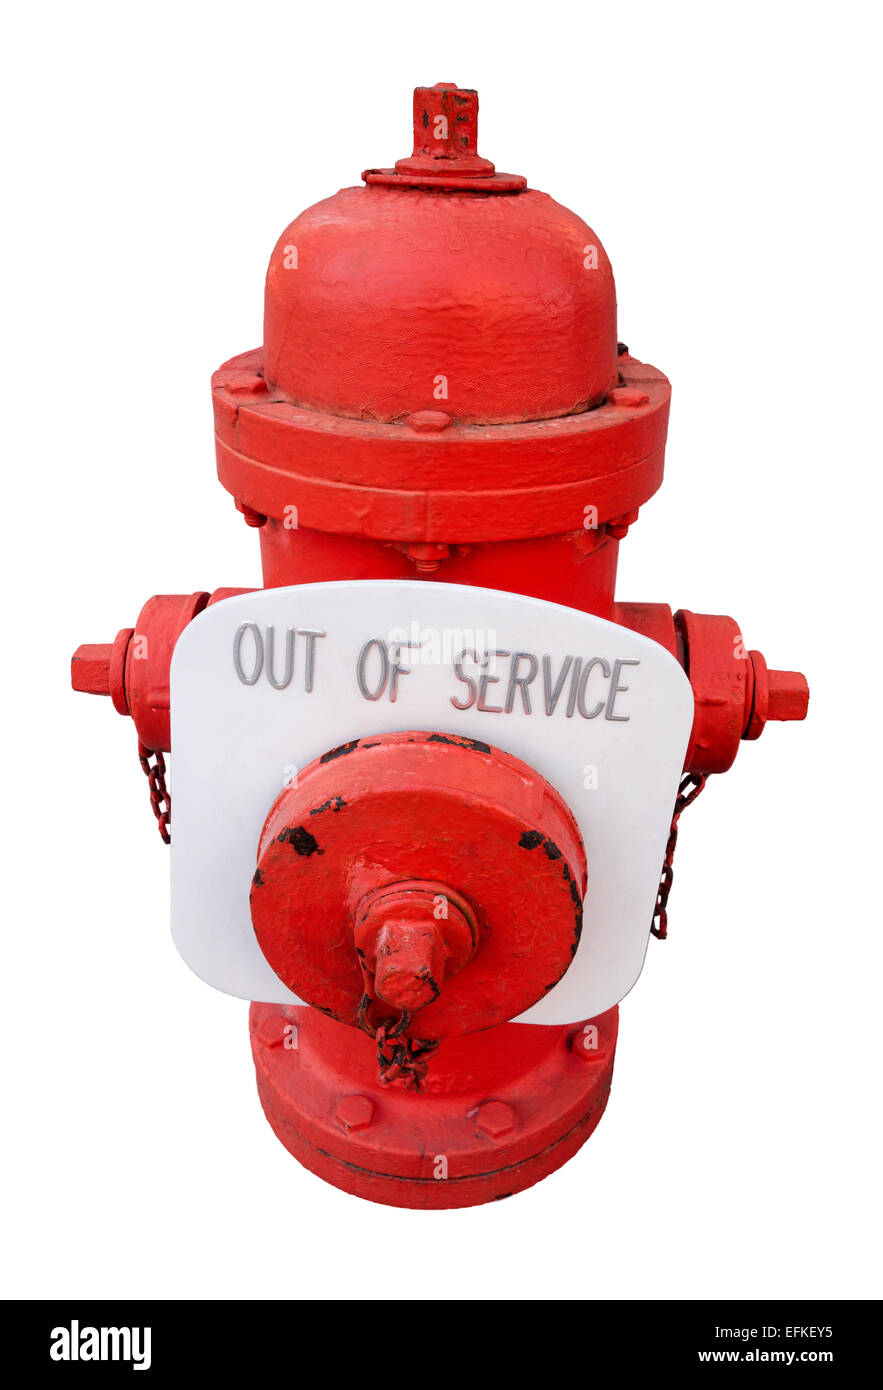 Ci rosso fuoco con idranti al di fuori del segno di servizio; non funzionante, rotte, unsafe, inaffidabili fire plug. Problema di sicurezza, preoccupazione. Foto Stock